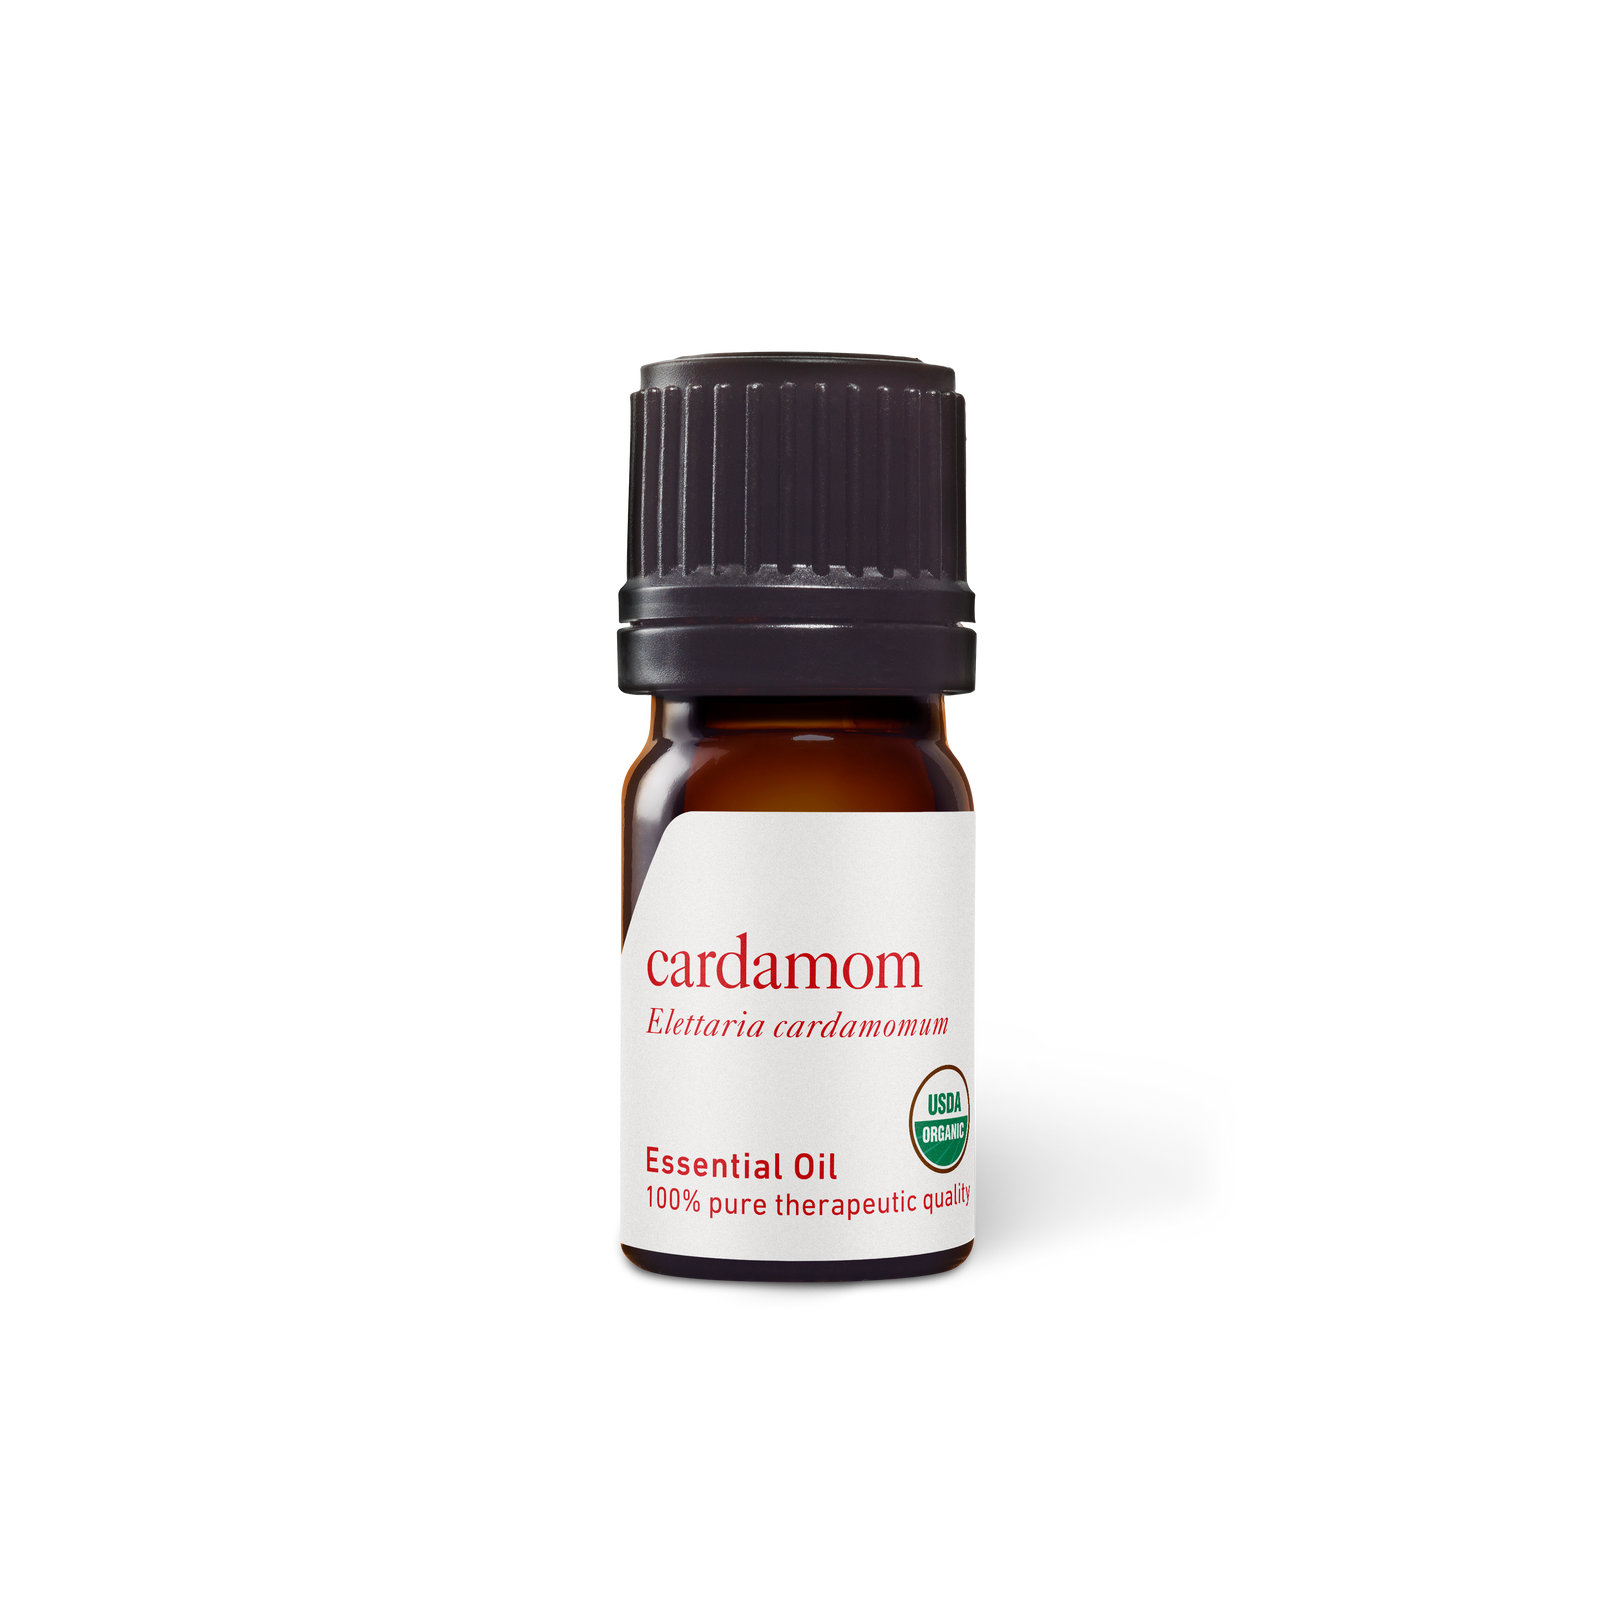 Cardamom Oil